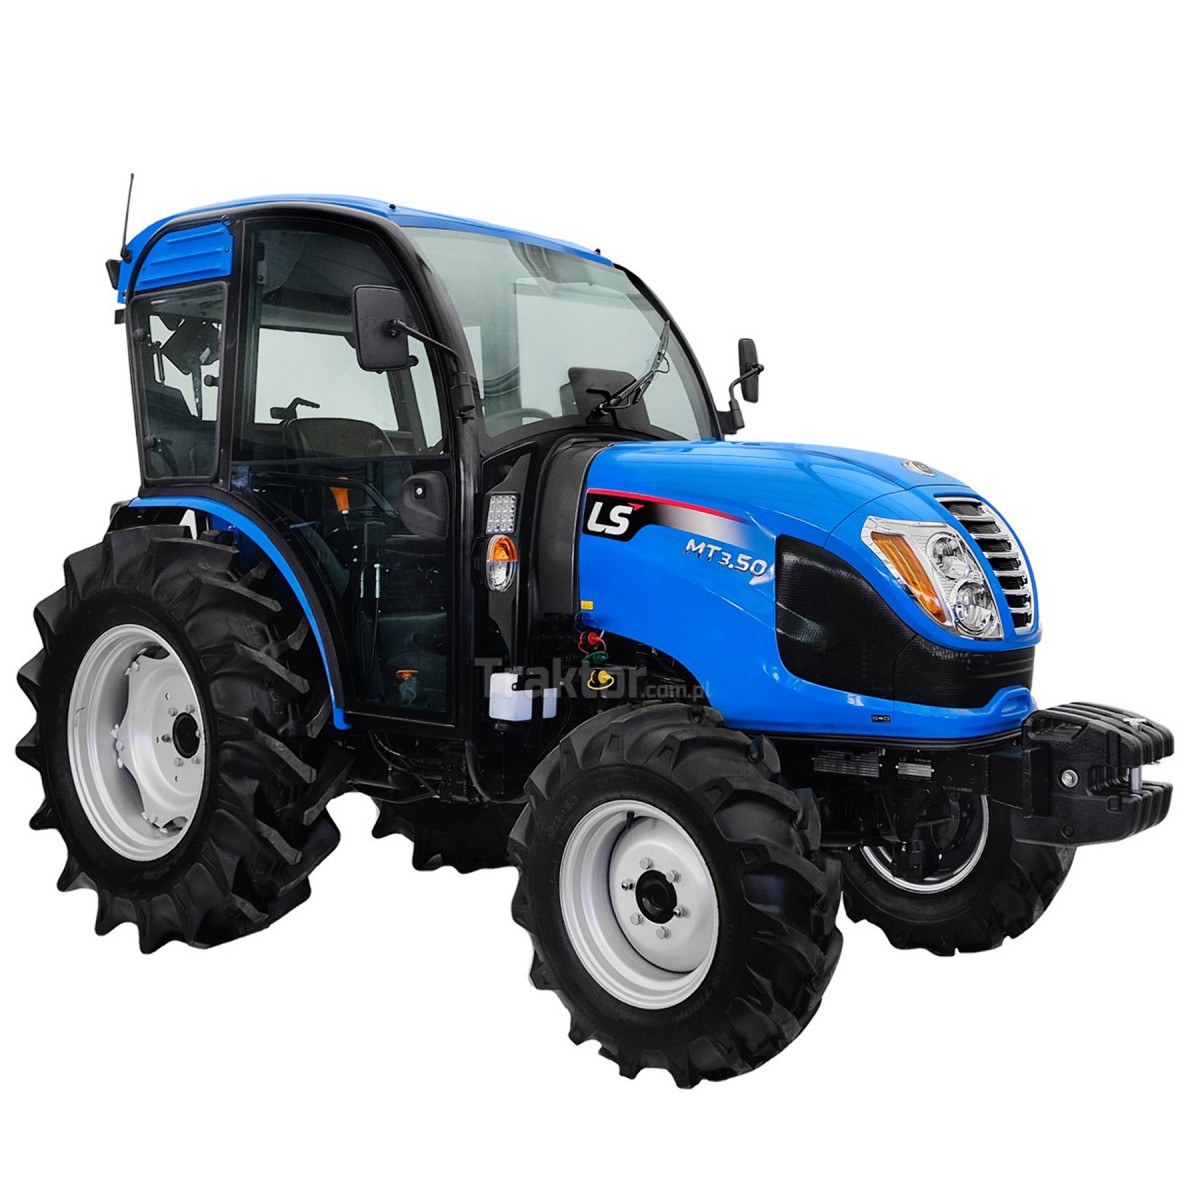 LS Traktor MT3.50 MEC 4x4 - 47 PS / KABINE